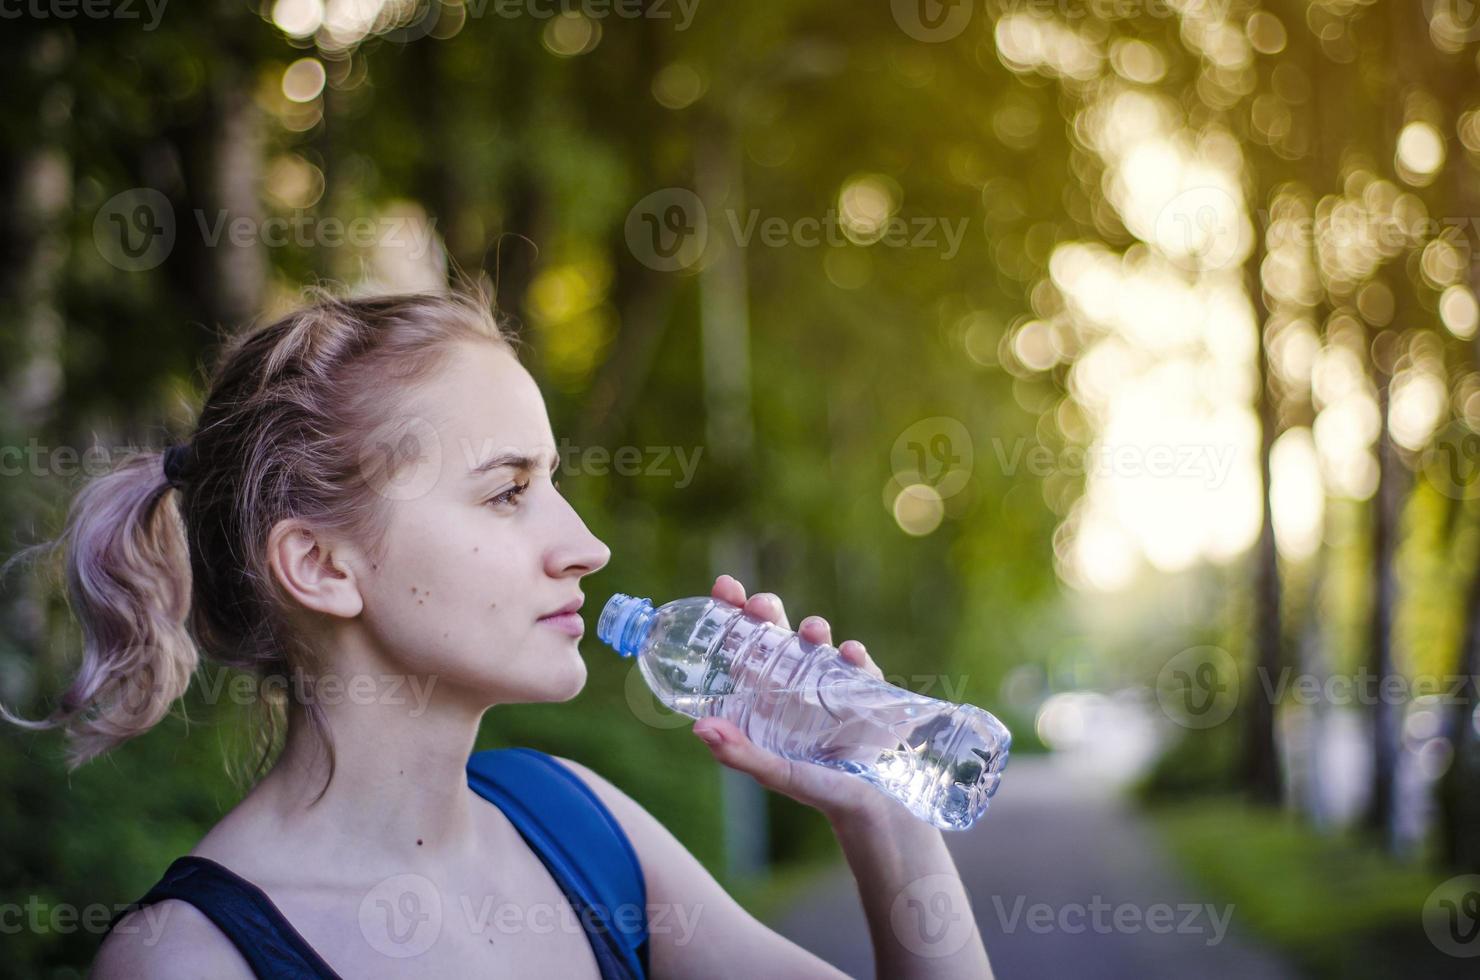 linda garota bebendo água após o exercício. praticando esportes. foto